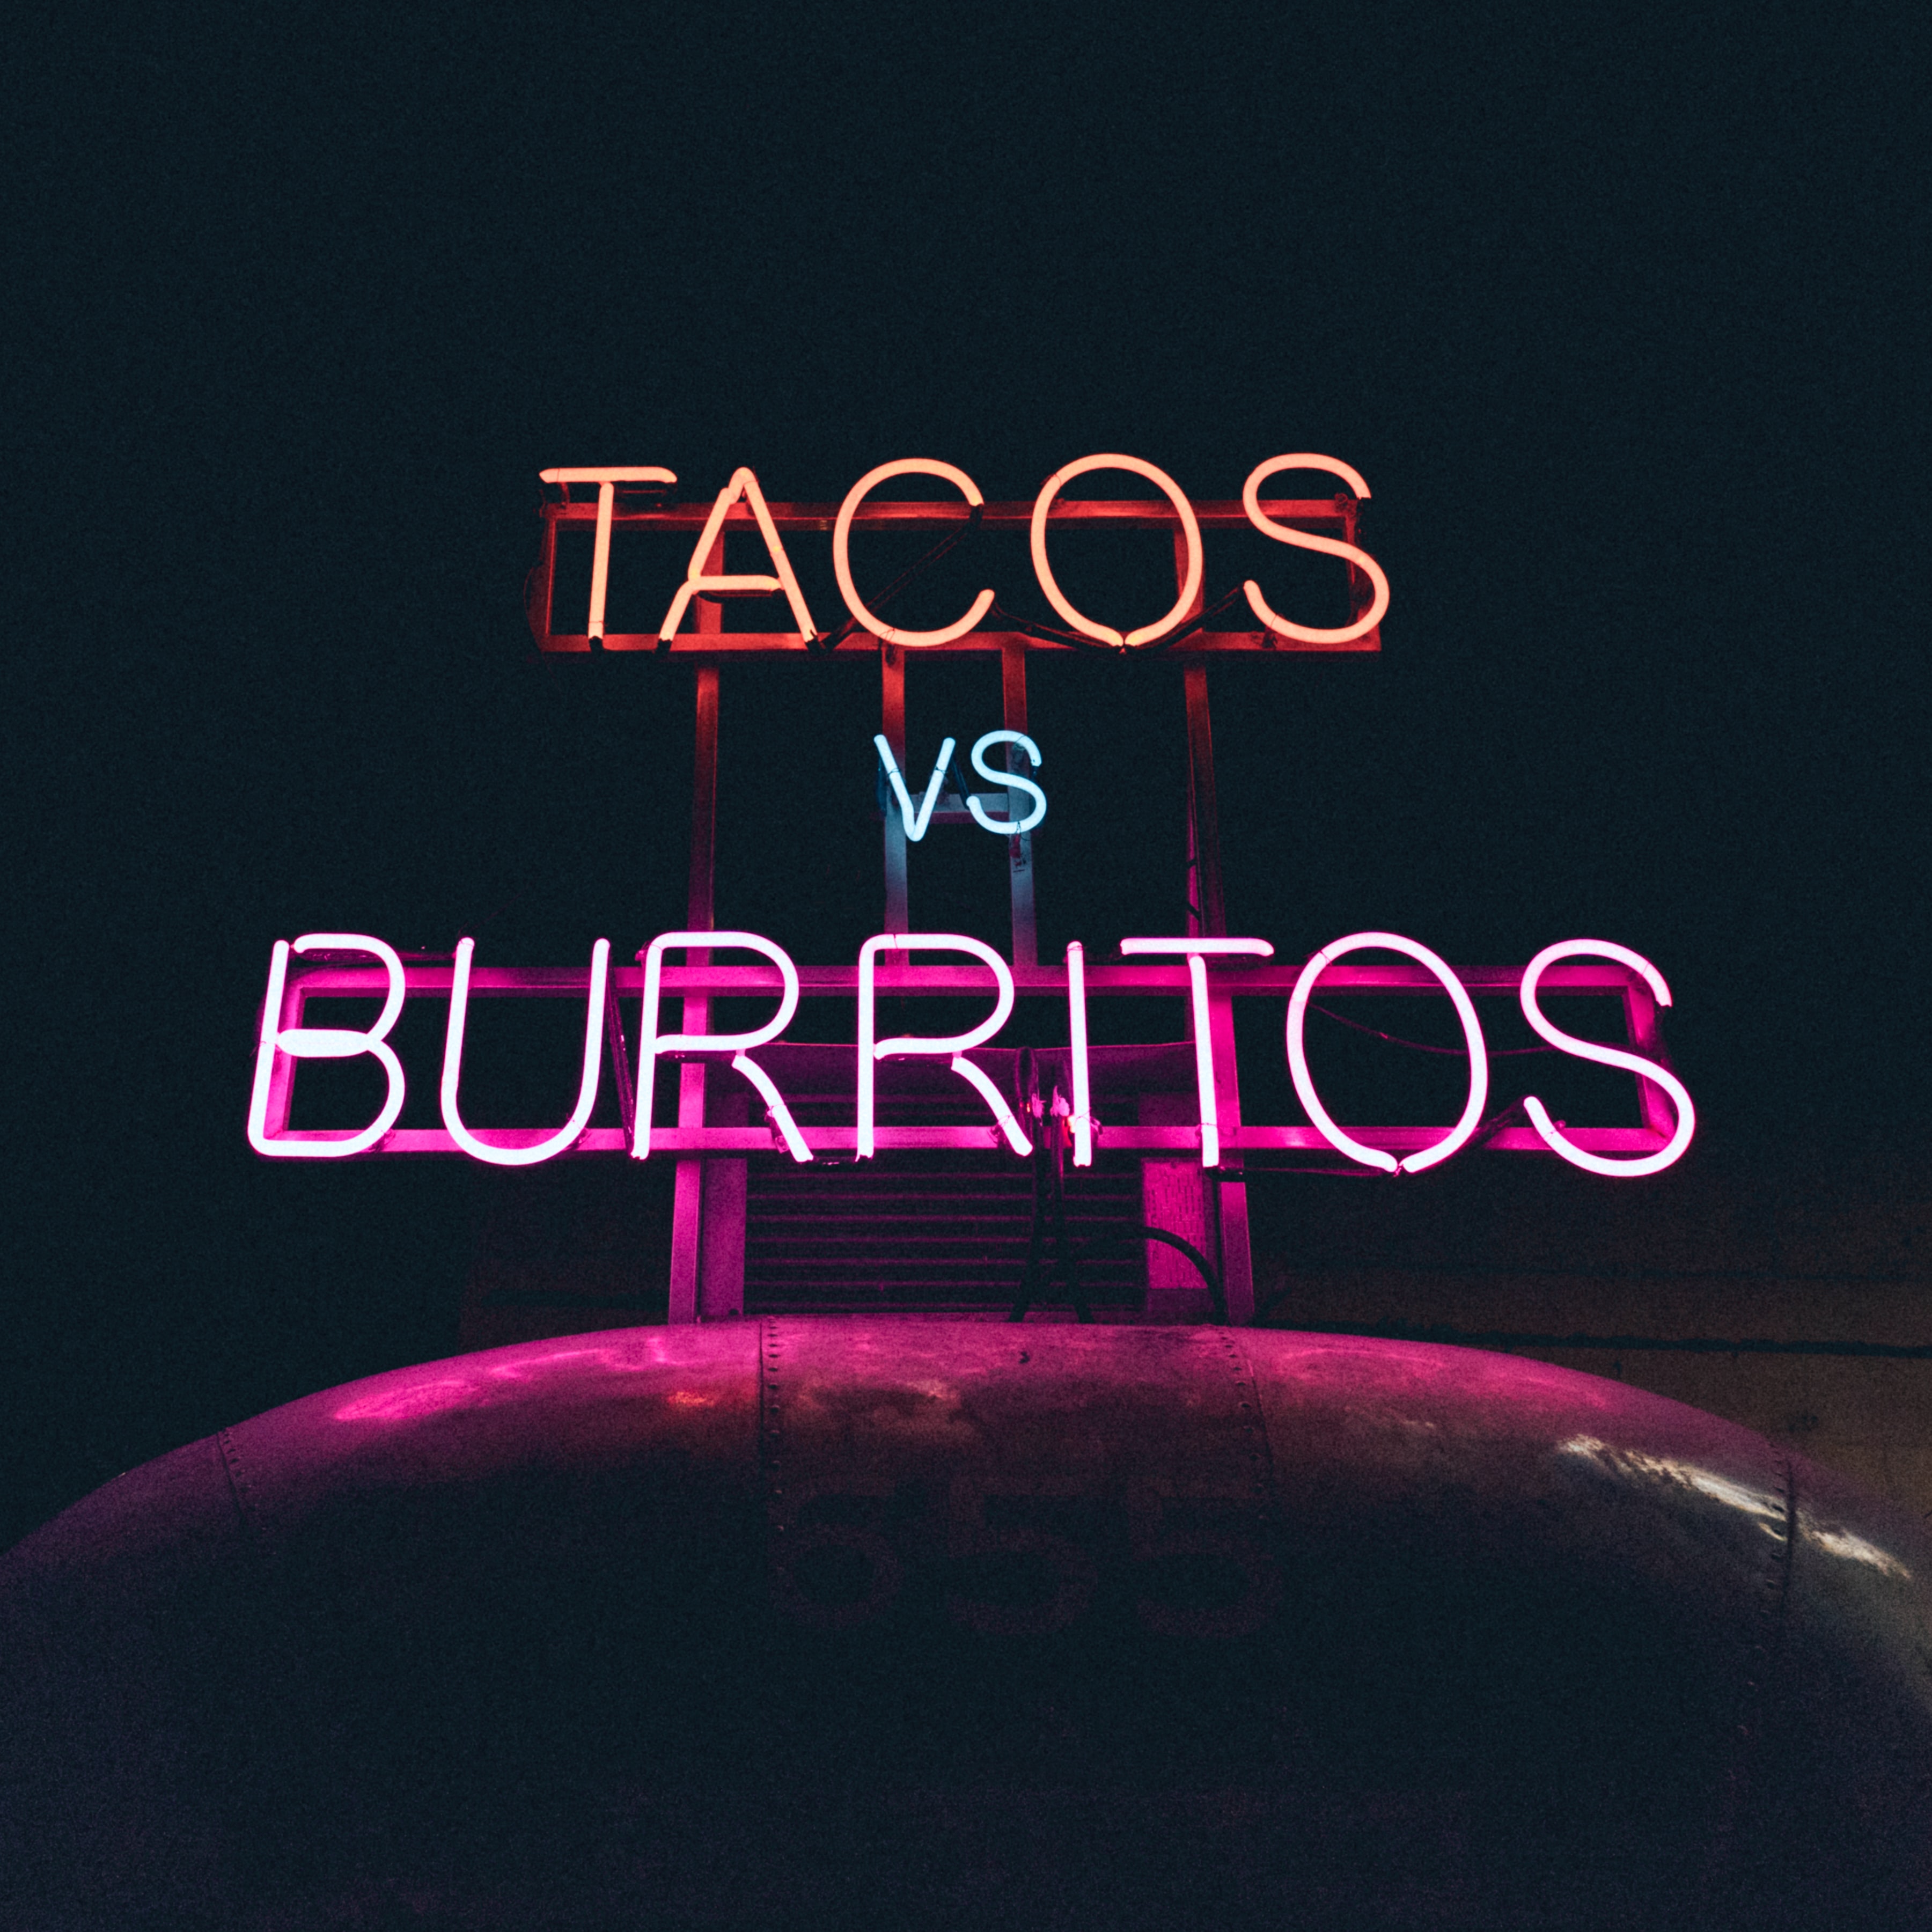 Taco's vs Burrito's neon light